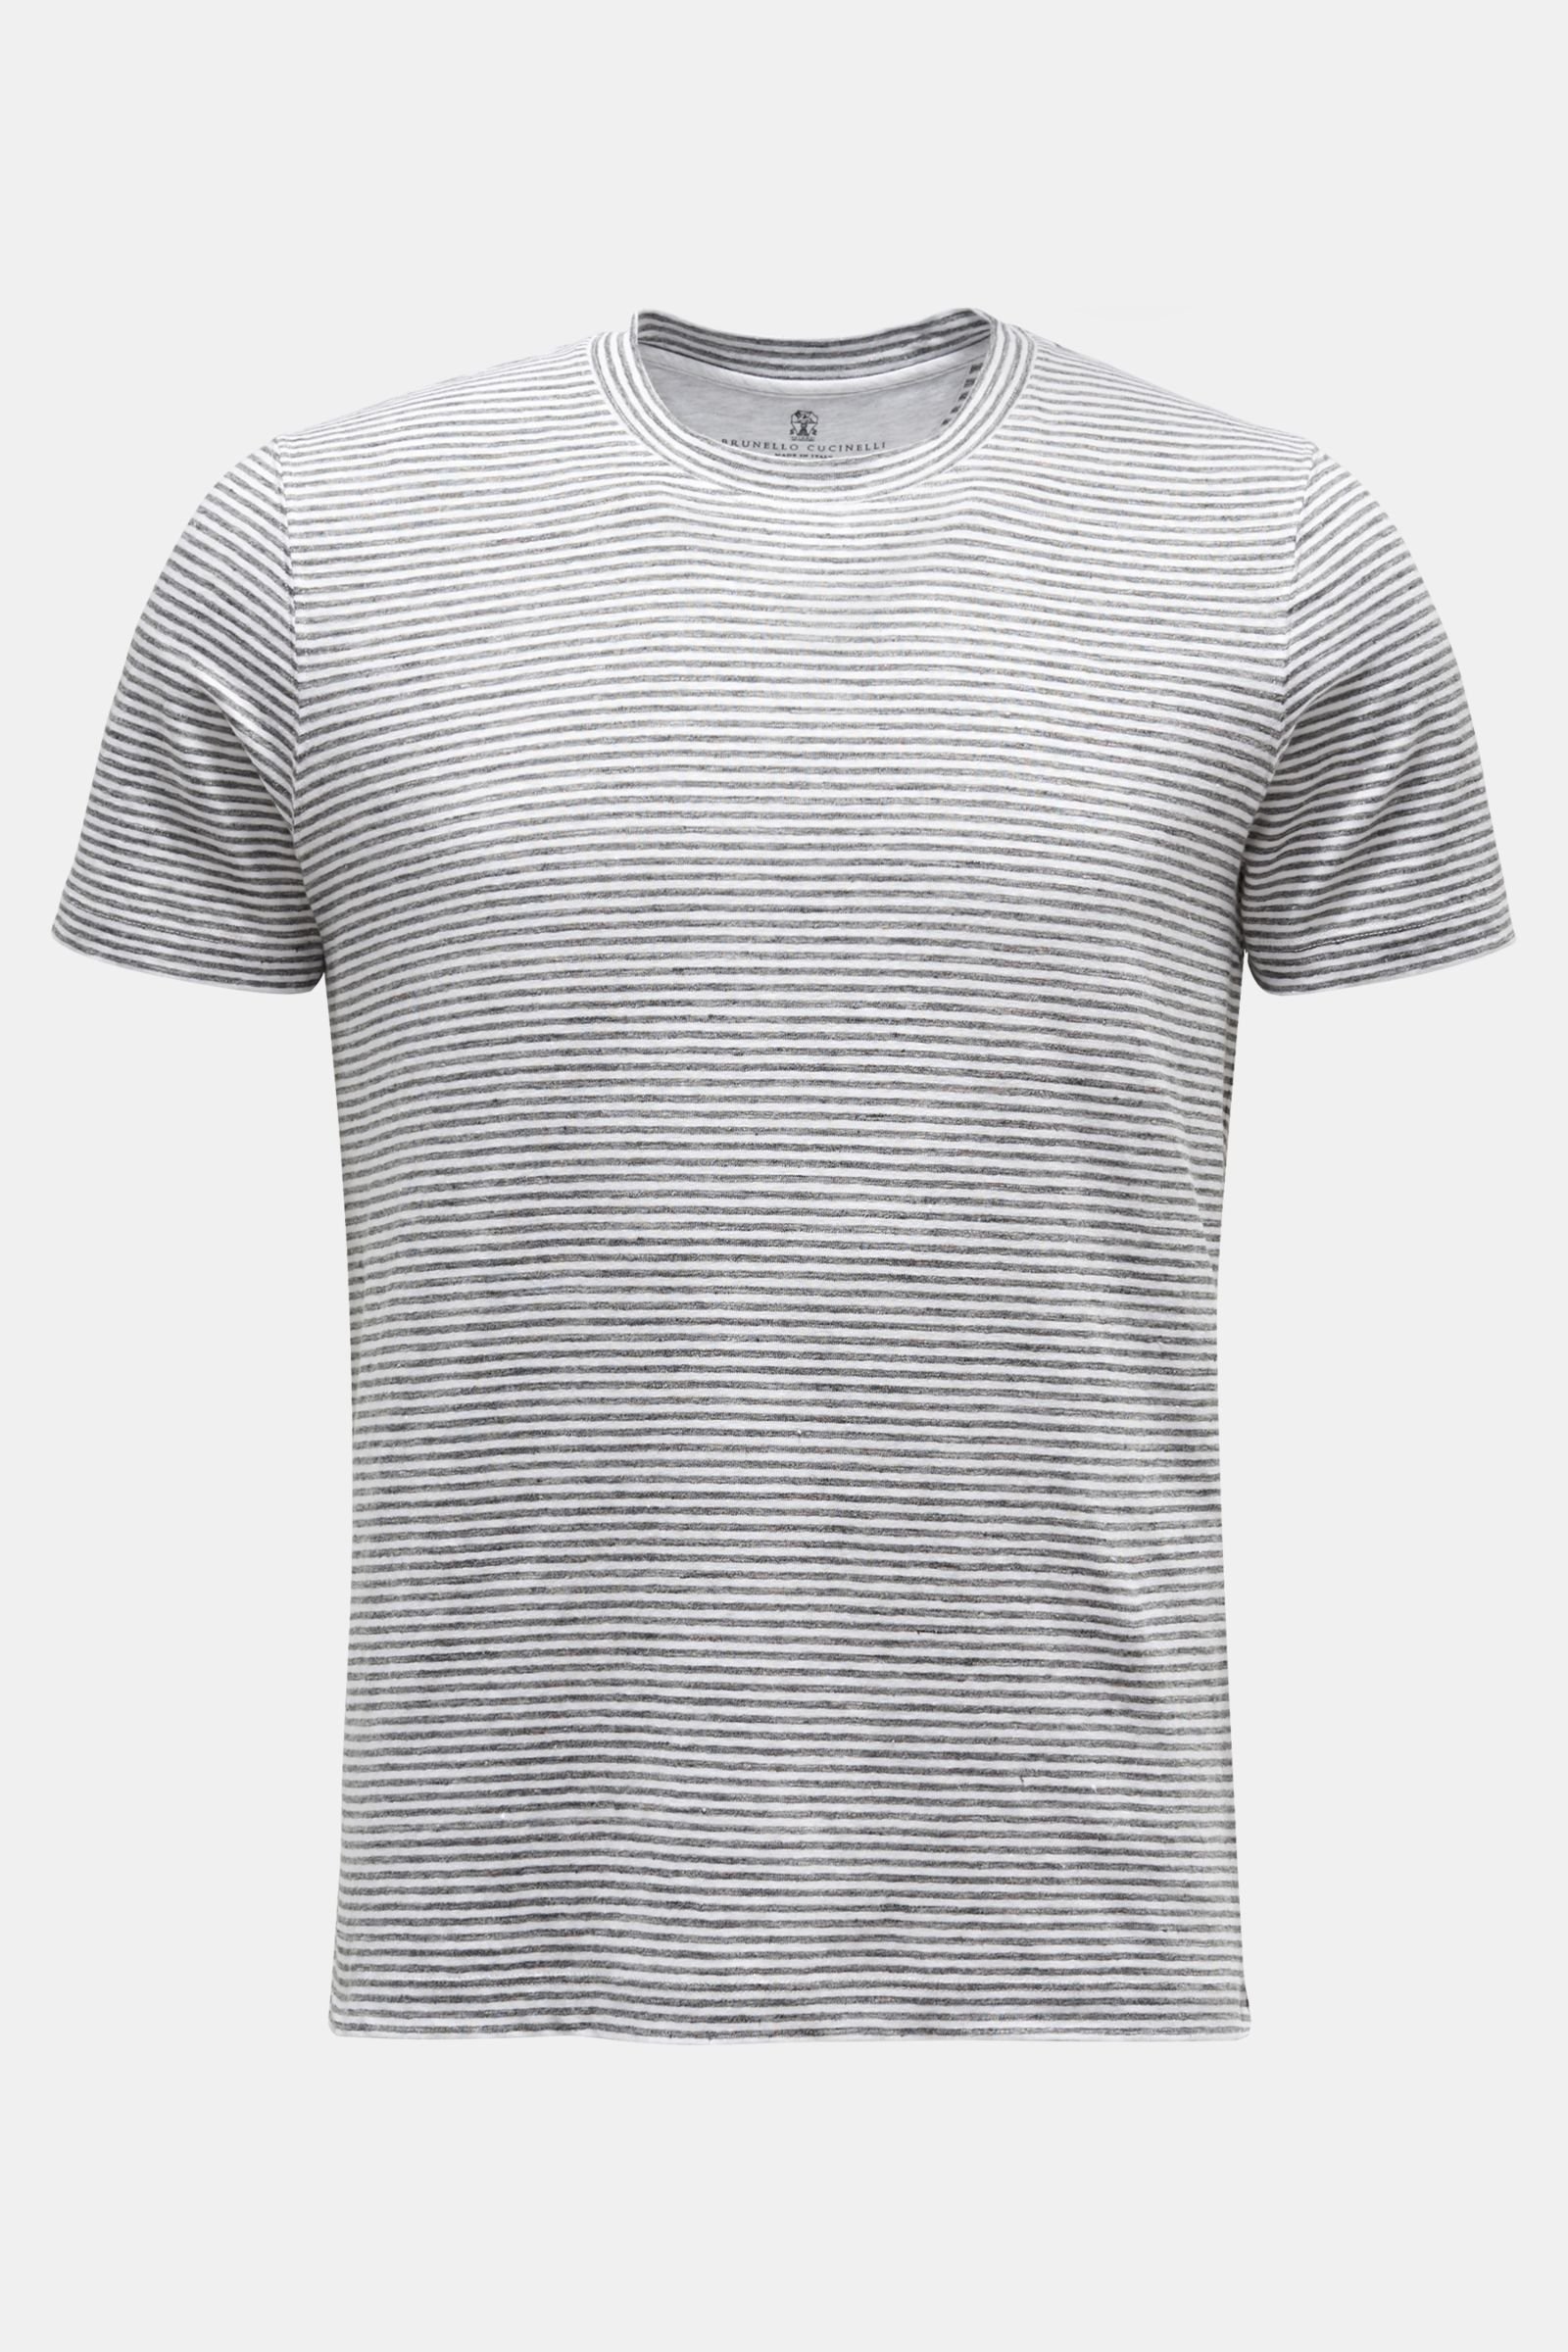 Leinen Rundhals-T-Shirt dunkelgrau/weiß gestreift